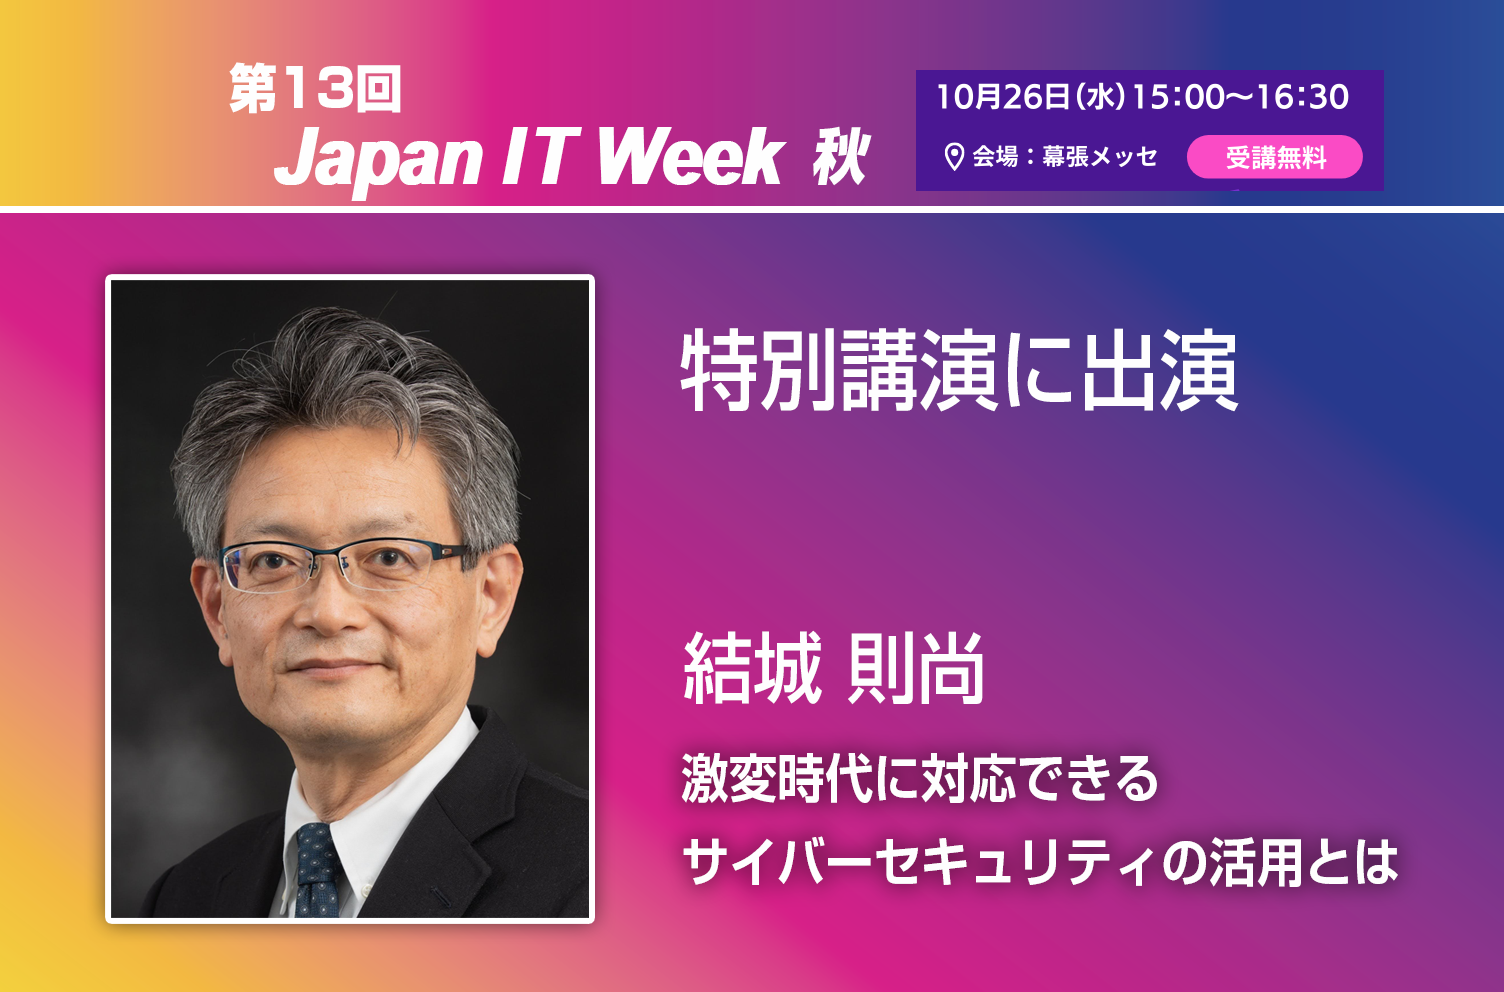 Japan IT Week 【秋】の特別講演に登壇